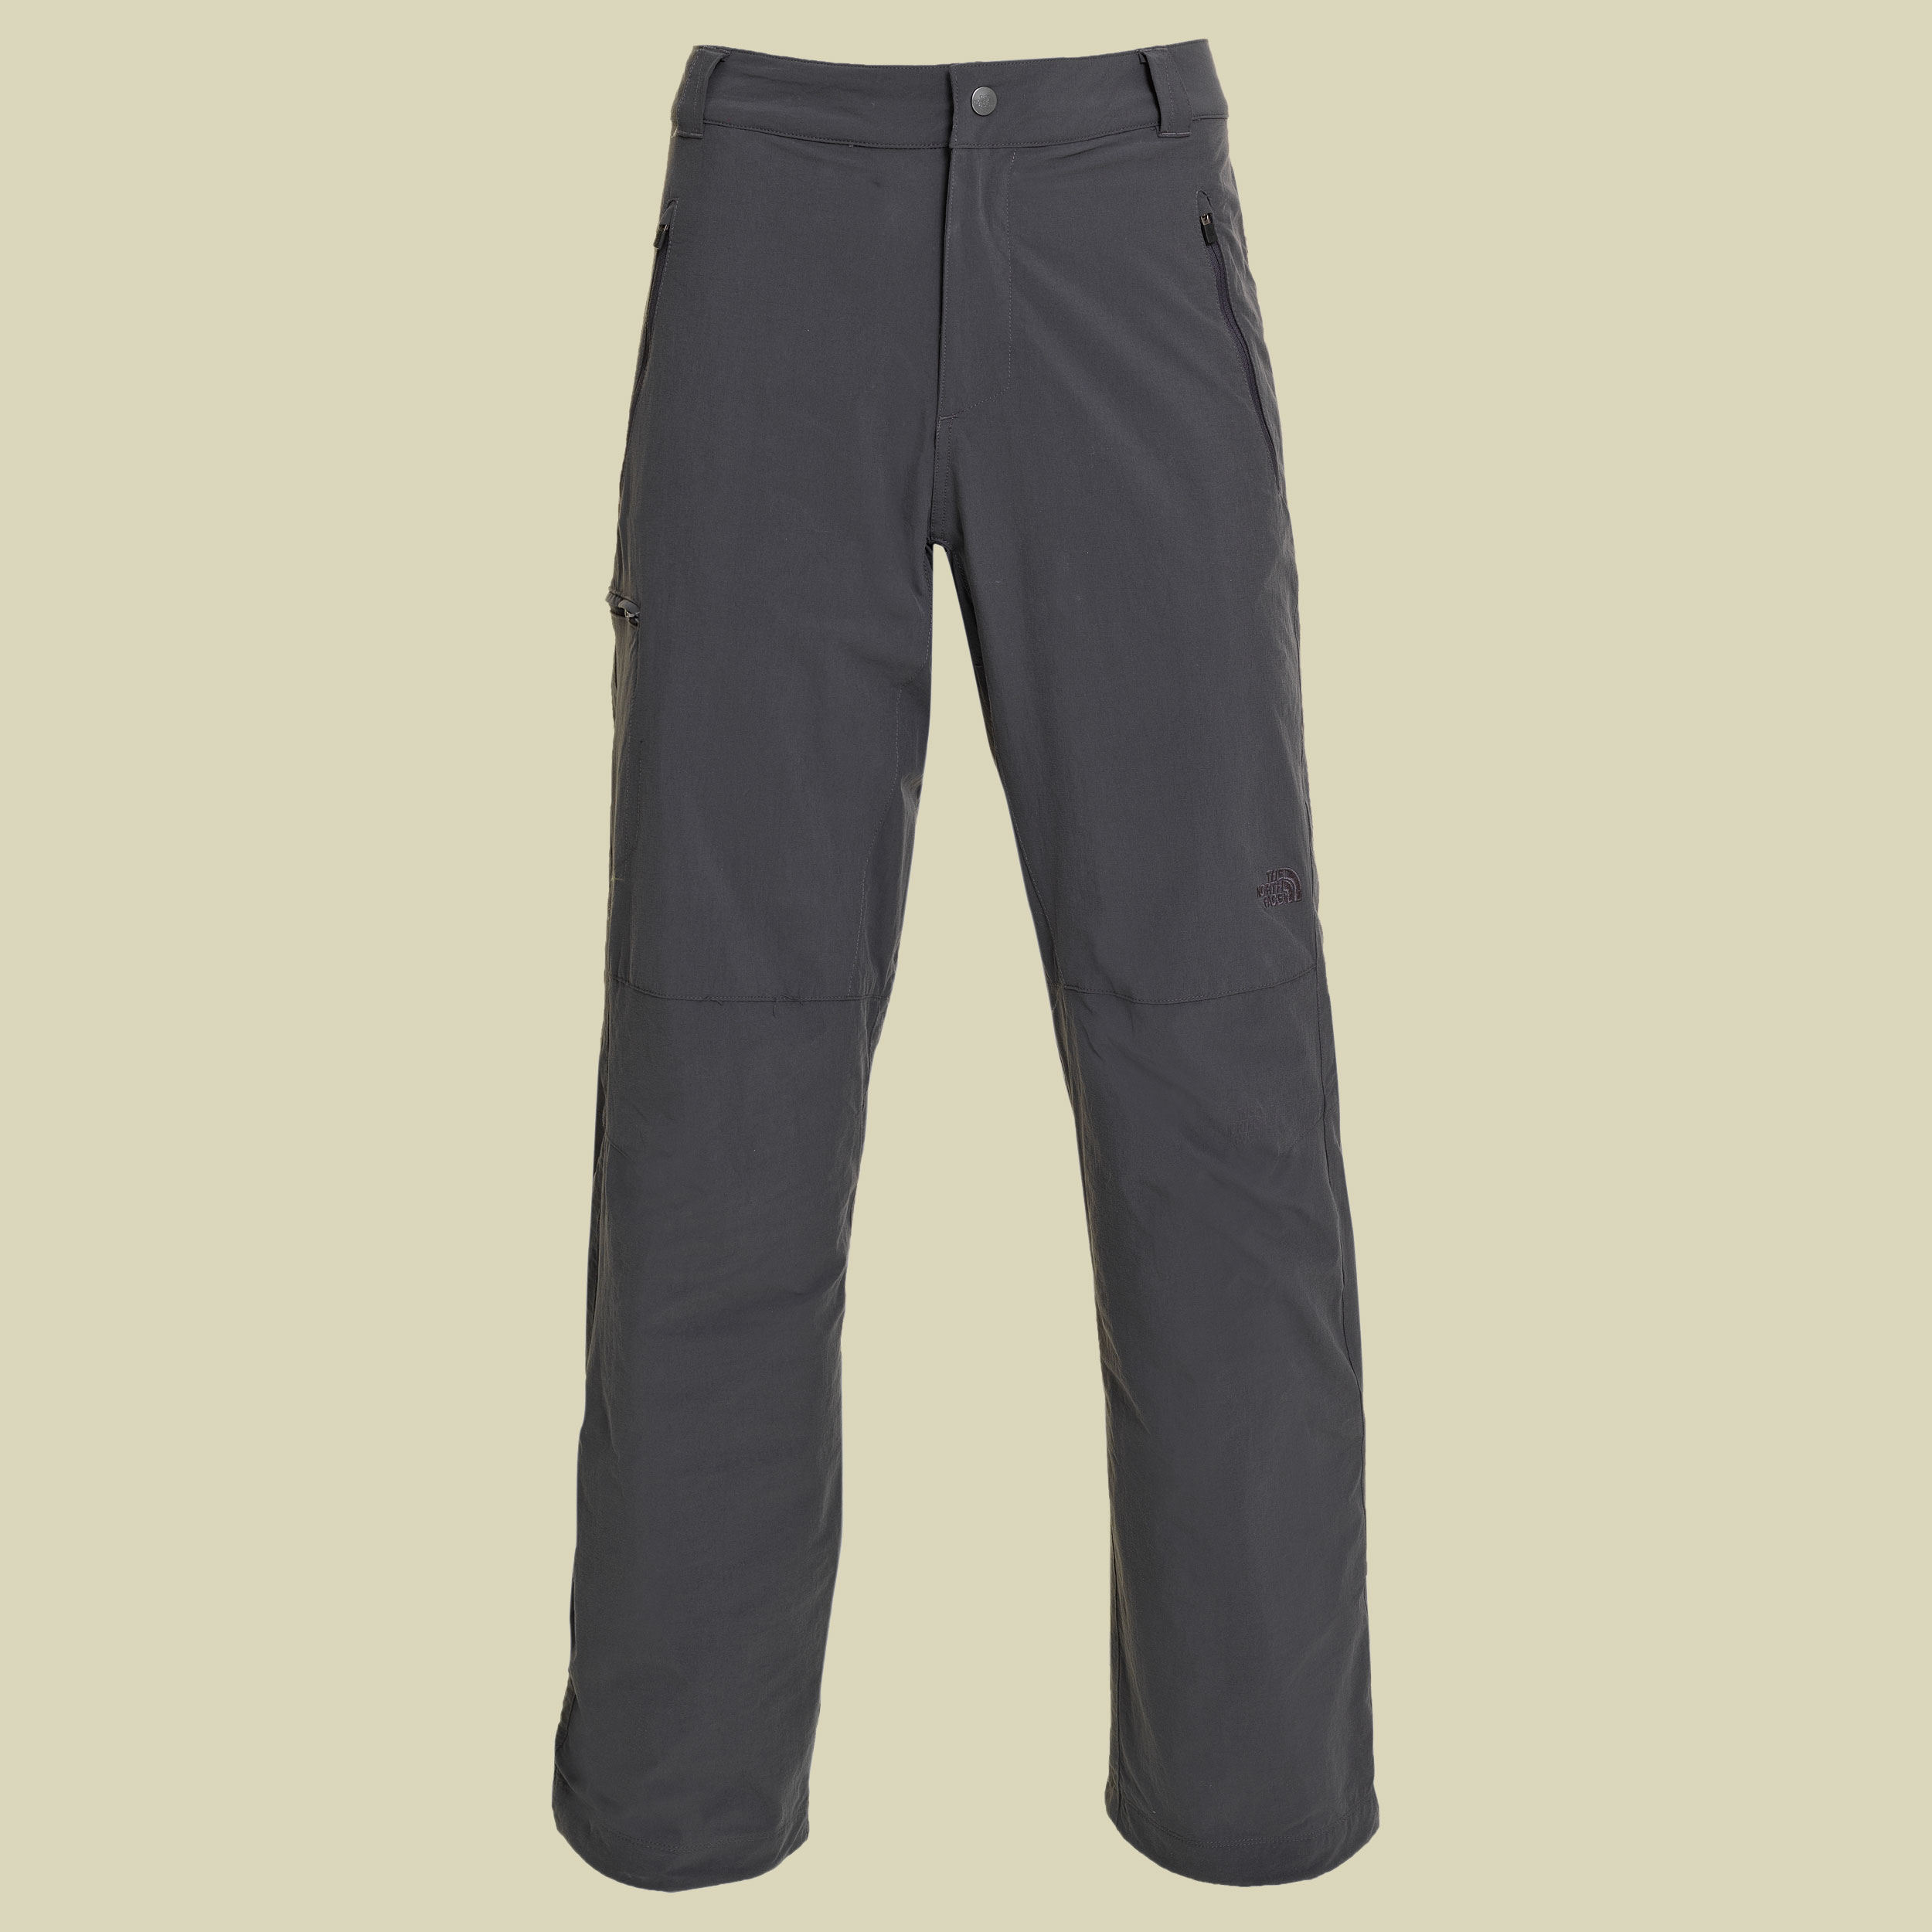 Men's Renshi Insulated Pant Größe 30 Farbe asphalt grey